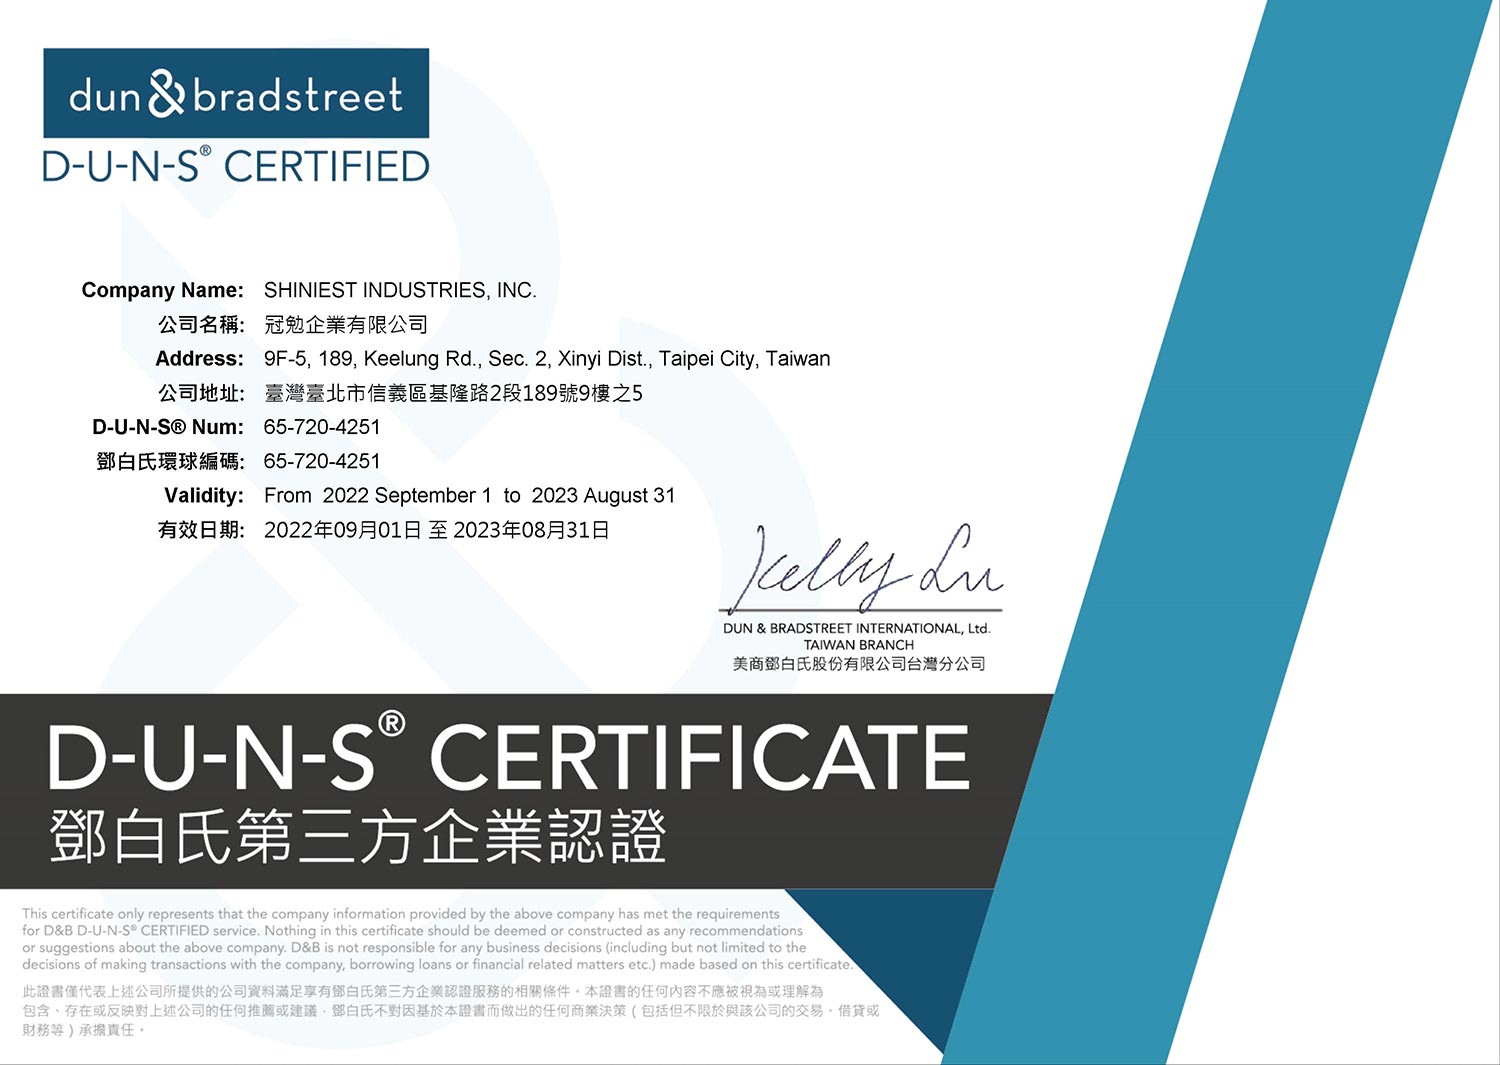 D-U-N-S Certificate (Shiniest Industries Inc)